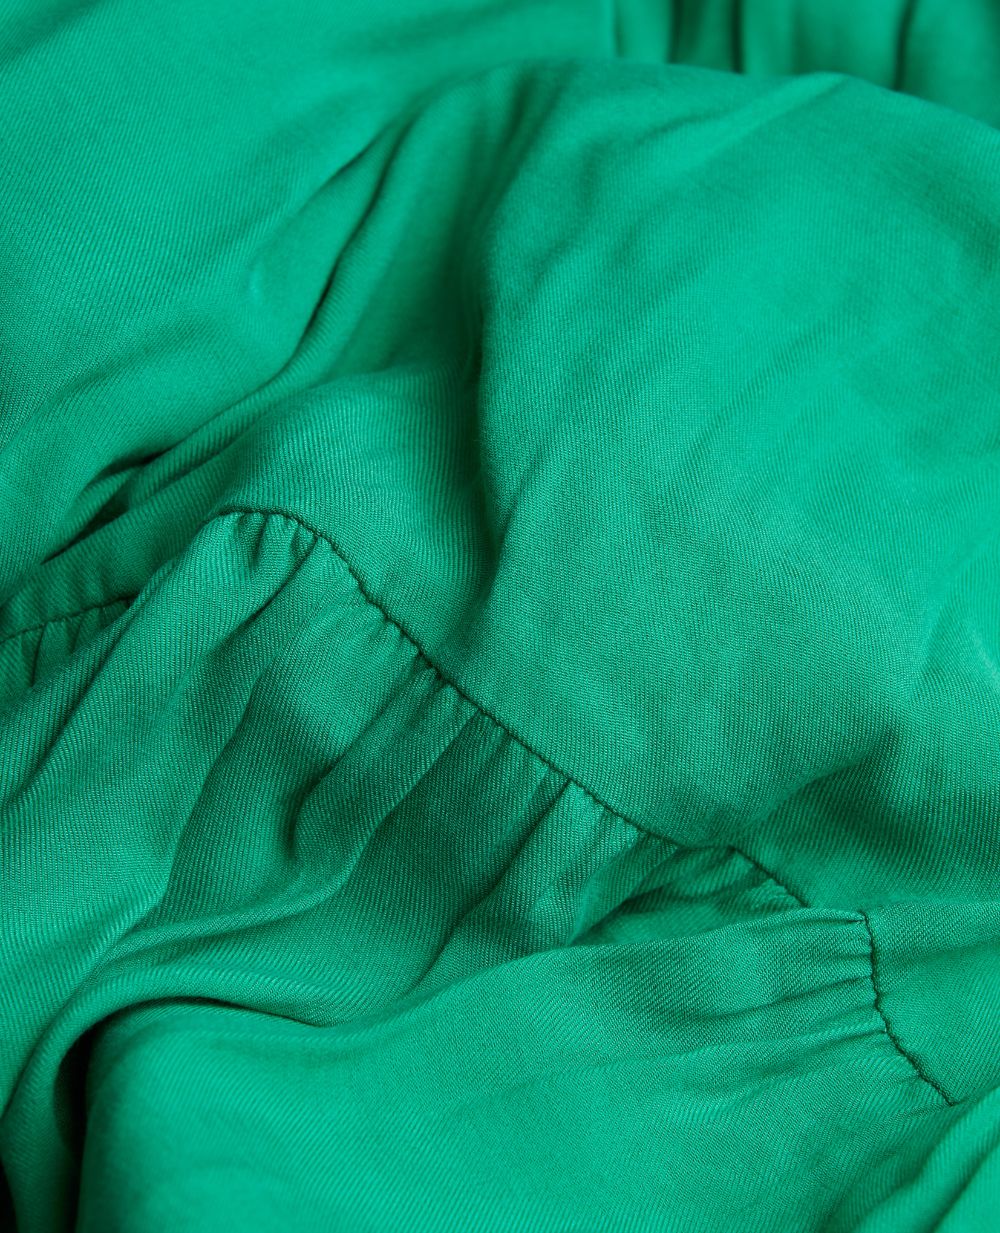 Robe longue de maternité Claudette vert